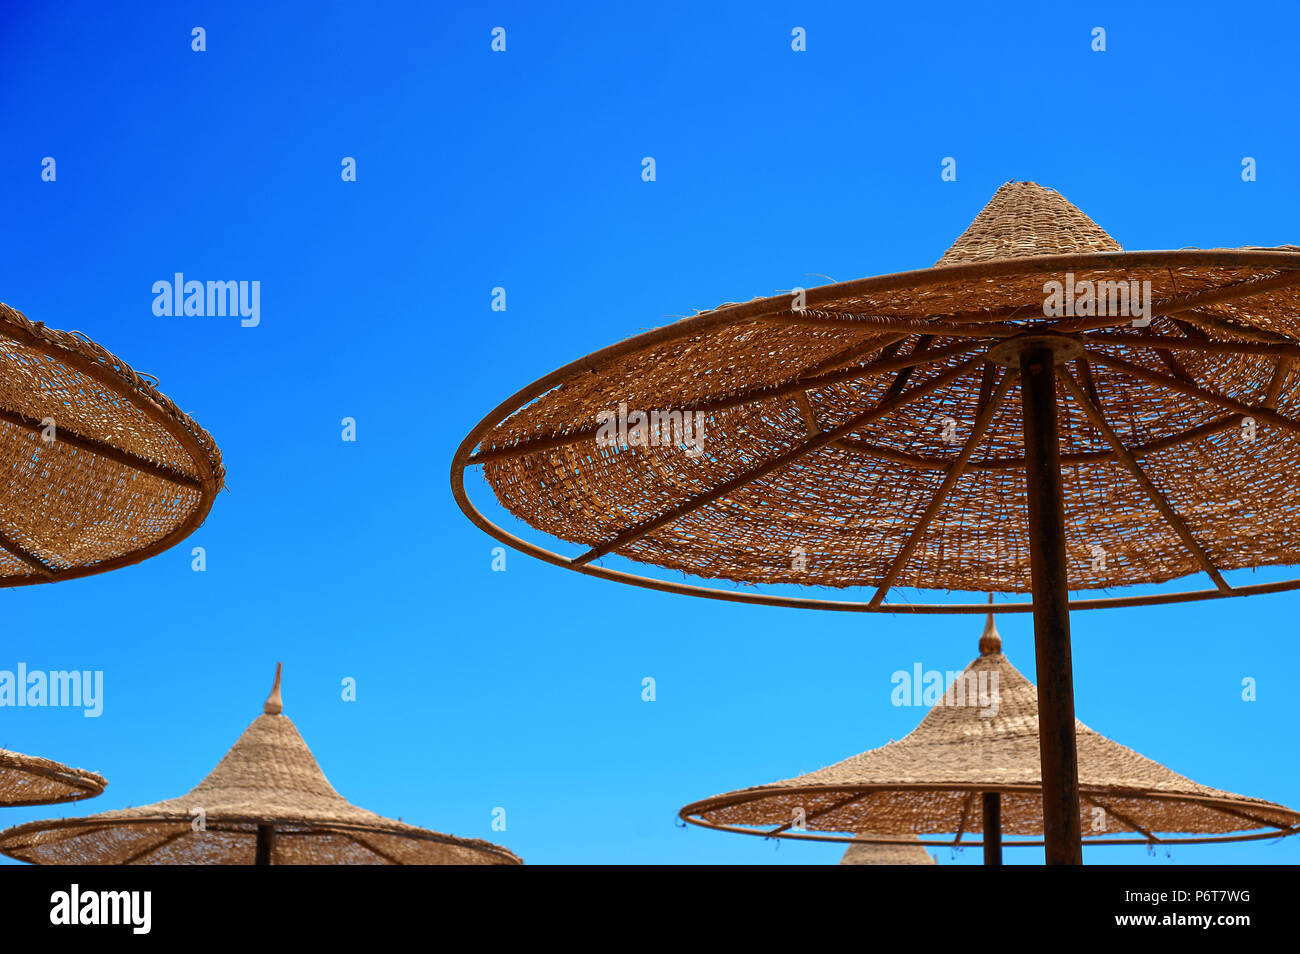 Sun-protection de l'osier des parasols sur la plage contre le ciel, le concept d'été tourisme Banque D'Images